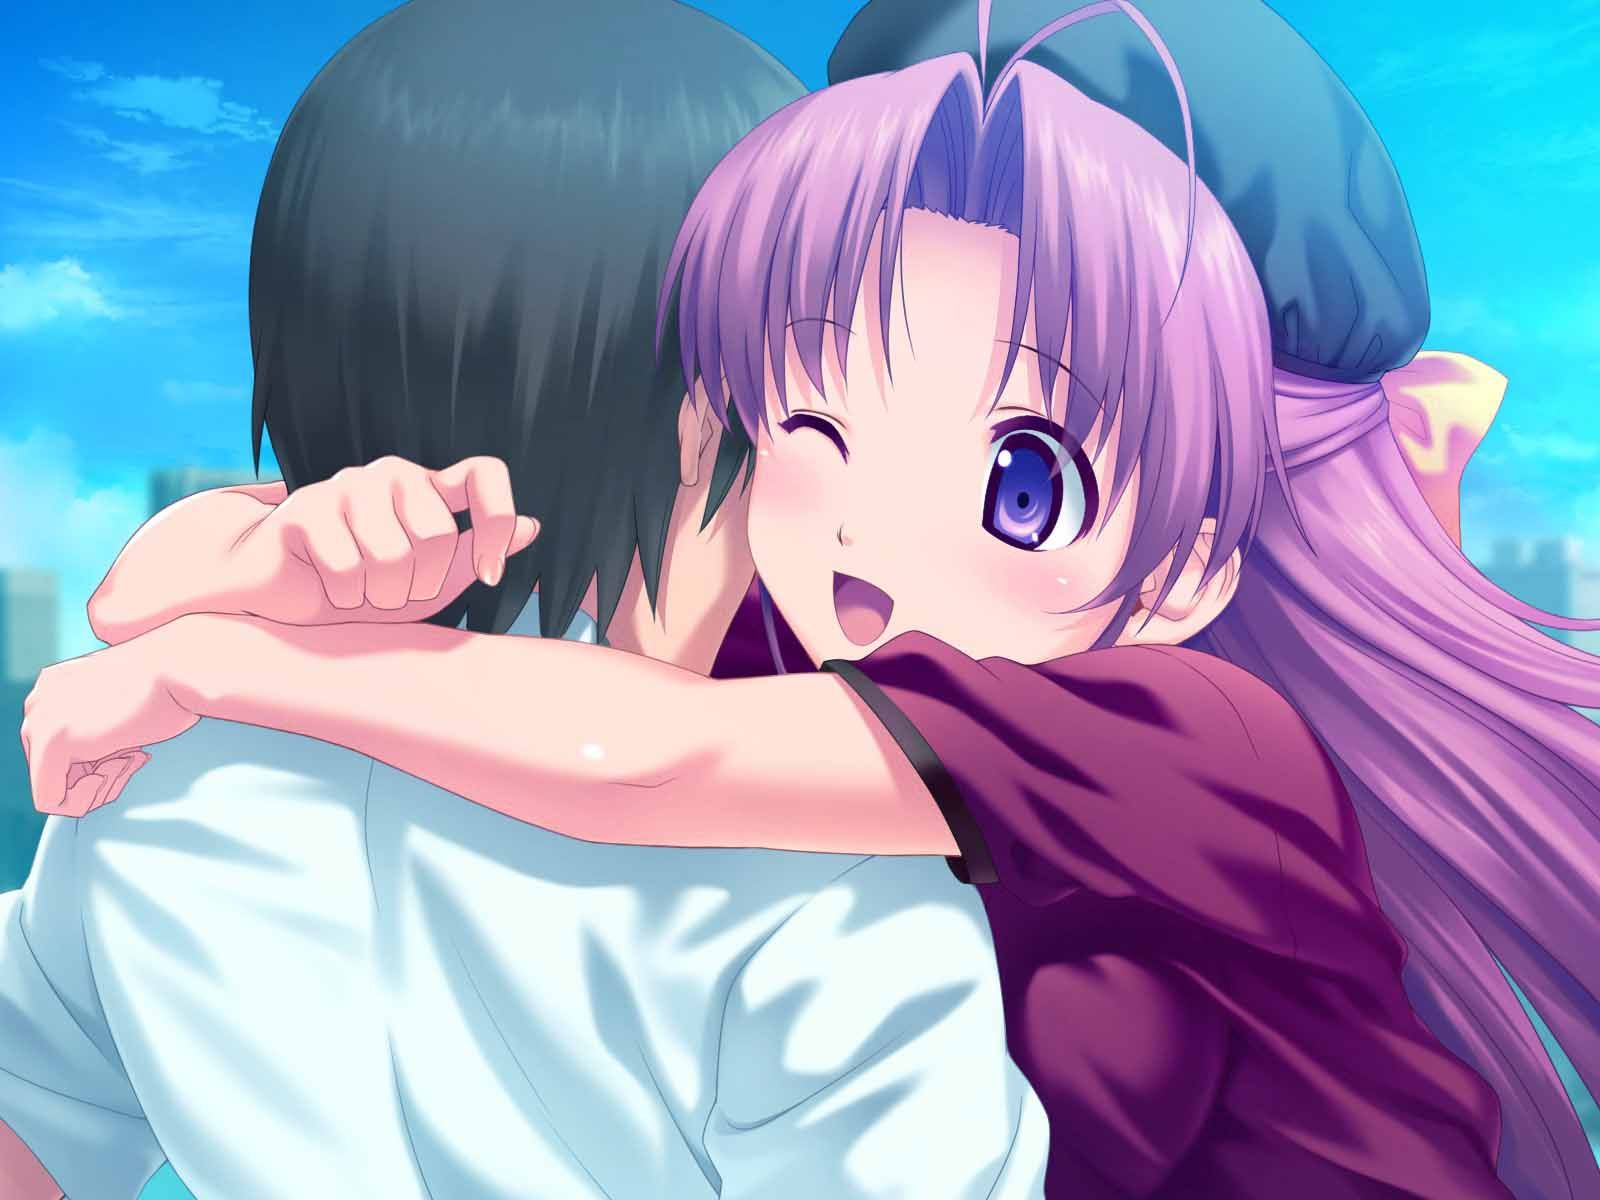 Cute Anime Hug Happy Hug Day Image. Anime hug, Anime, Happy hug day image